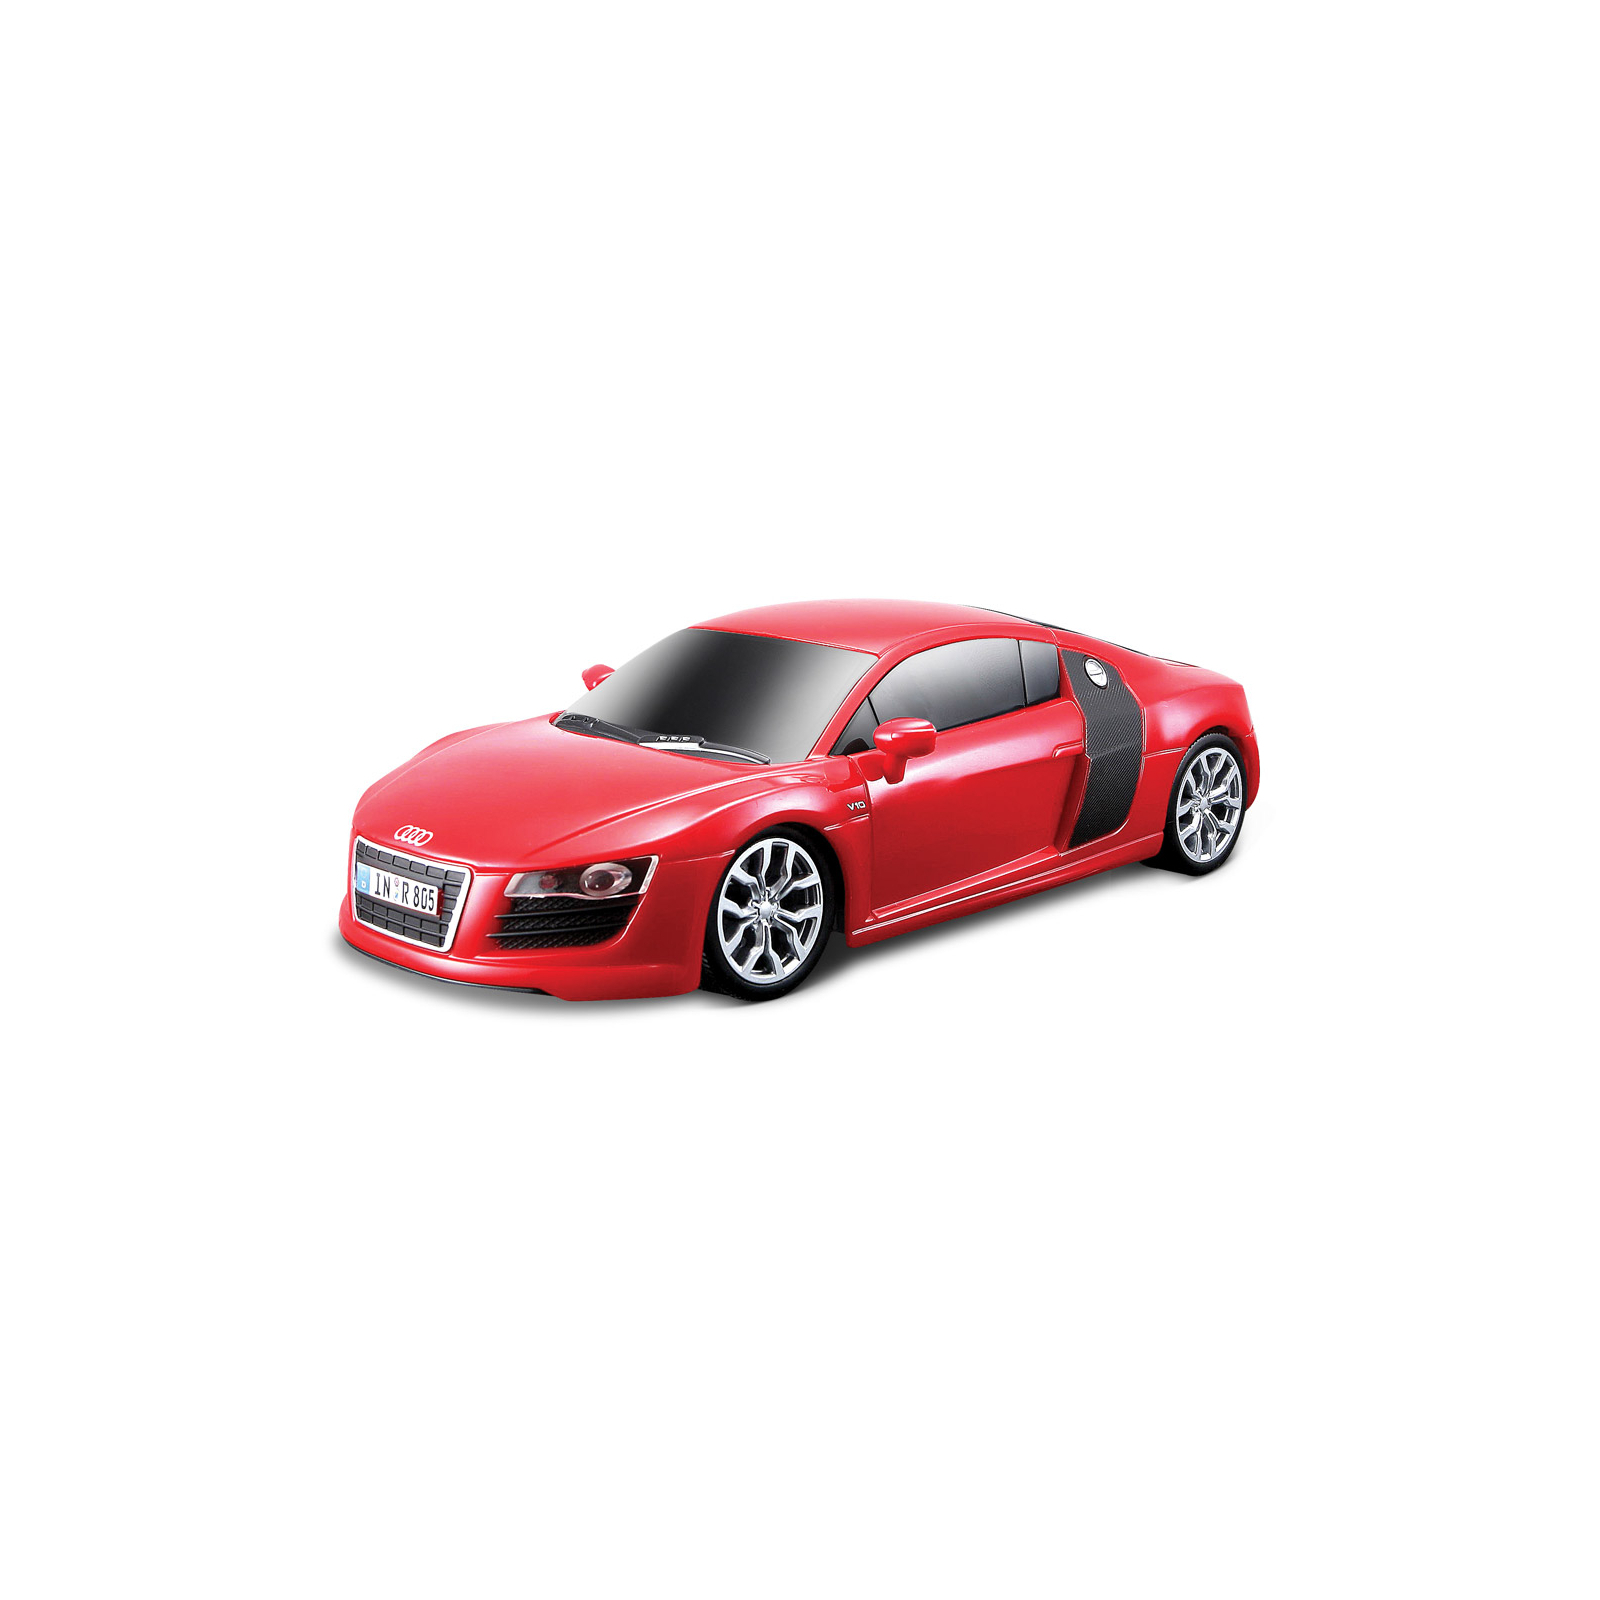 Машина Maisto Audi R8 V10 красный. Свет и звук (1:24) (81225 red)